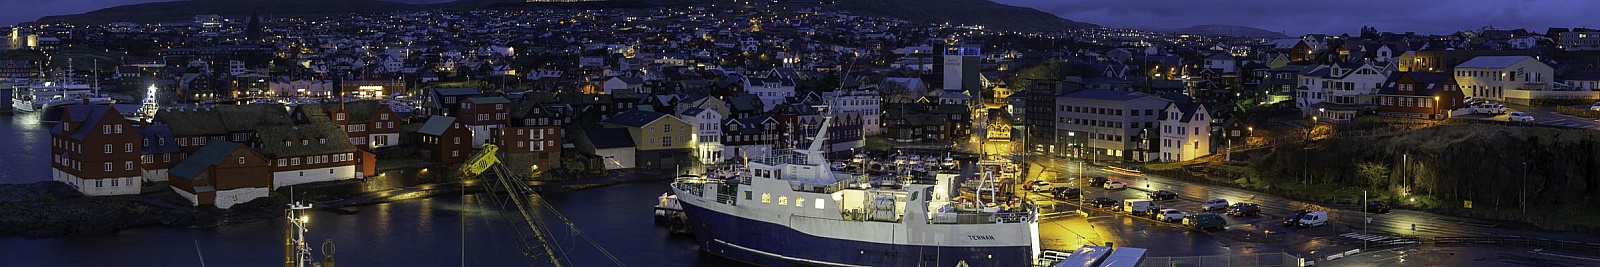 Hafen von Torshavn  Färöer Inseln - Panorama